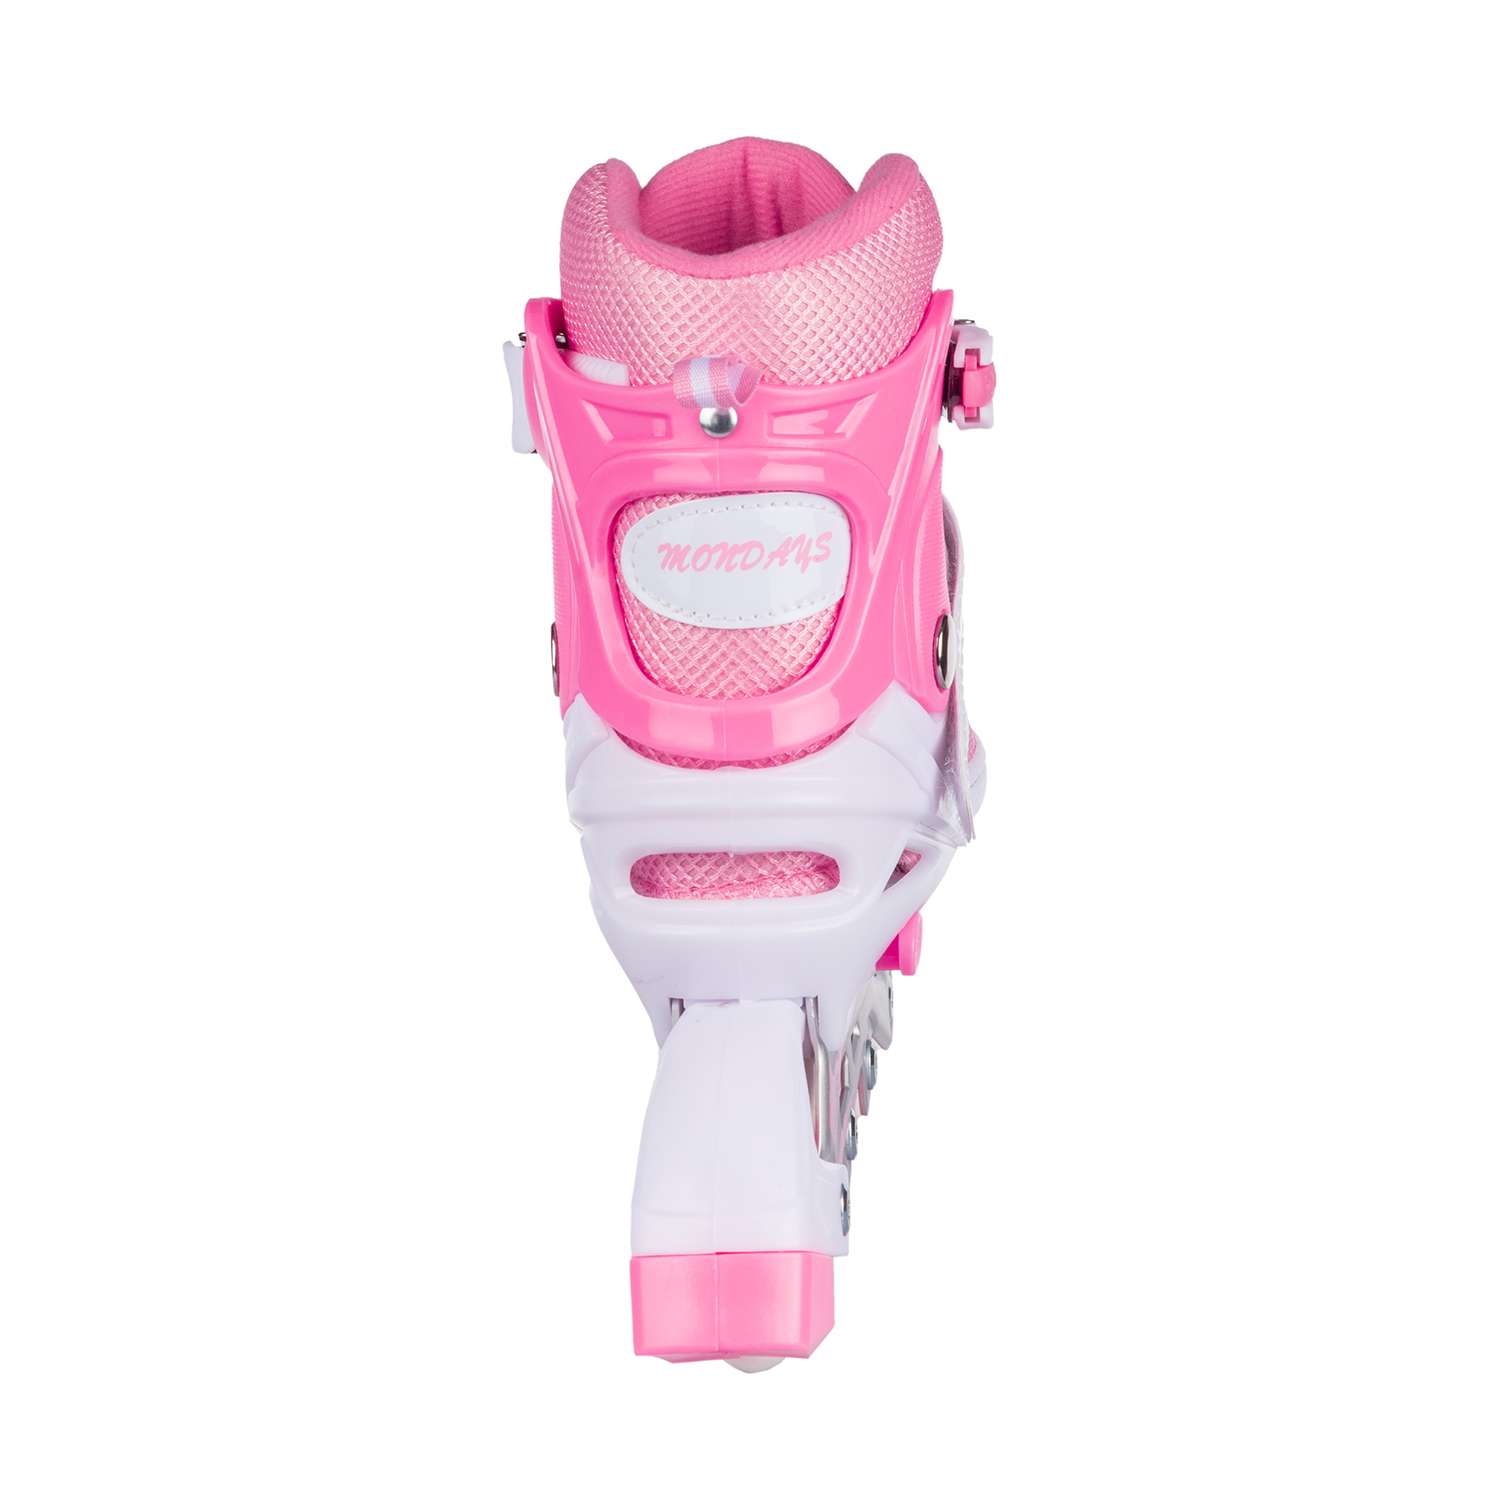 Роликовые коньки BABY STYLE розовые раздвижные размер с 28 по 31S светящиеся колеса - фото 4